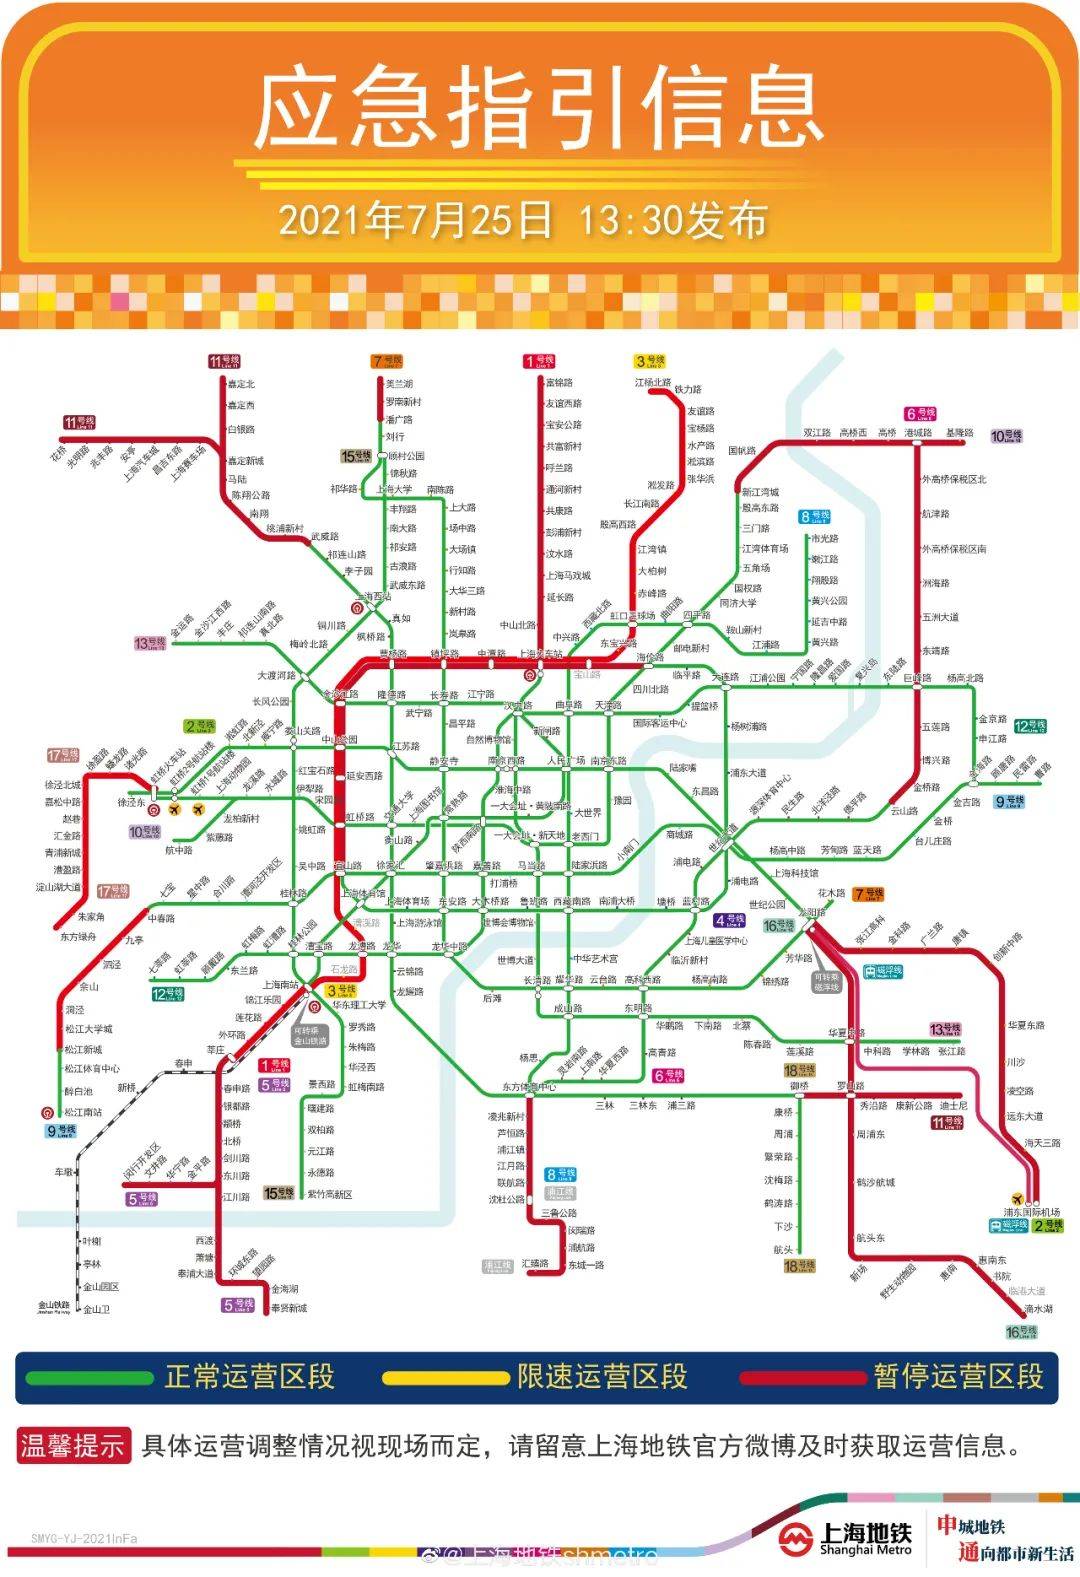 上海地铁所有地面,高架区段车站停运!